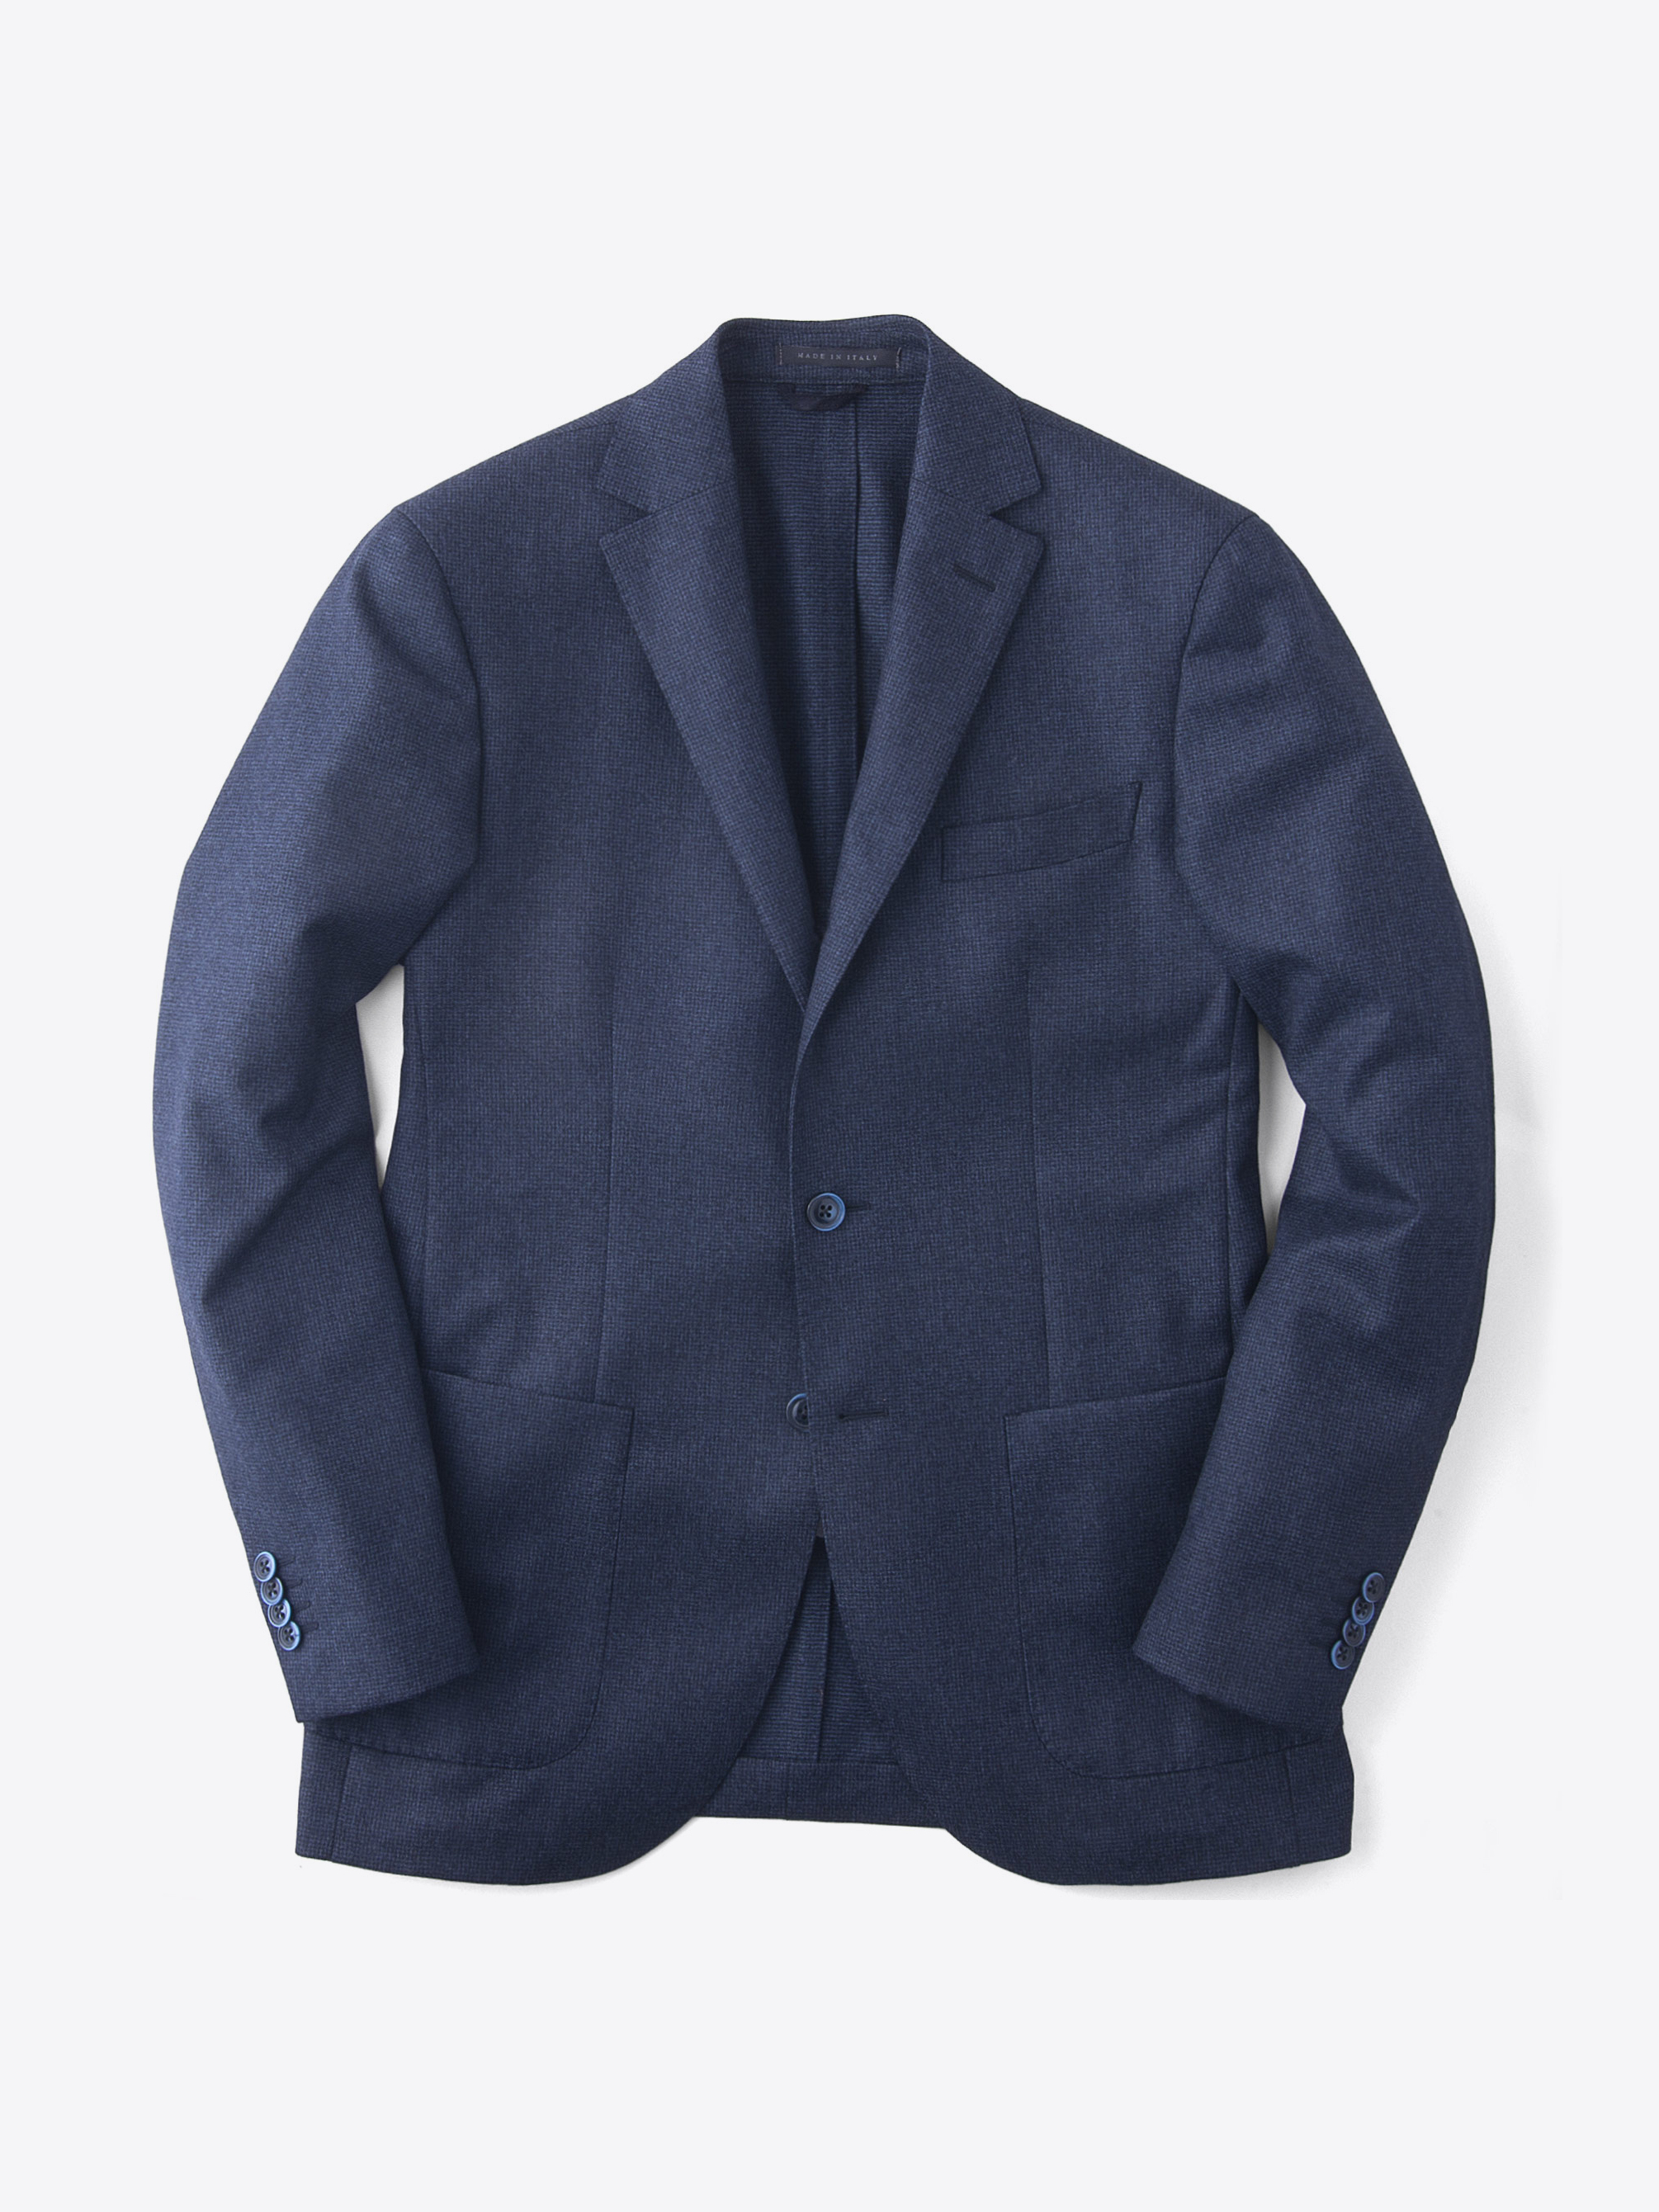 Zoom Image of Blue Houndstooth Genova Jacket